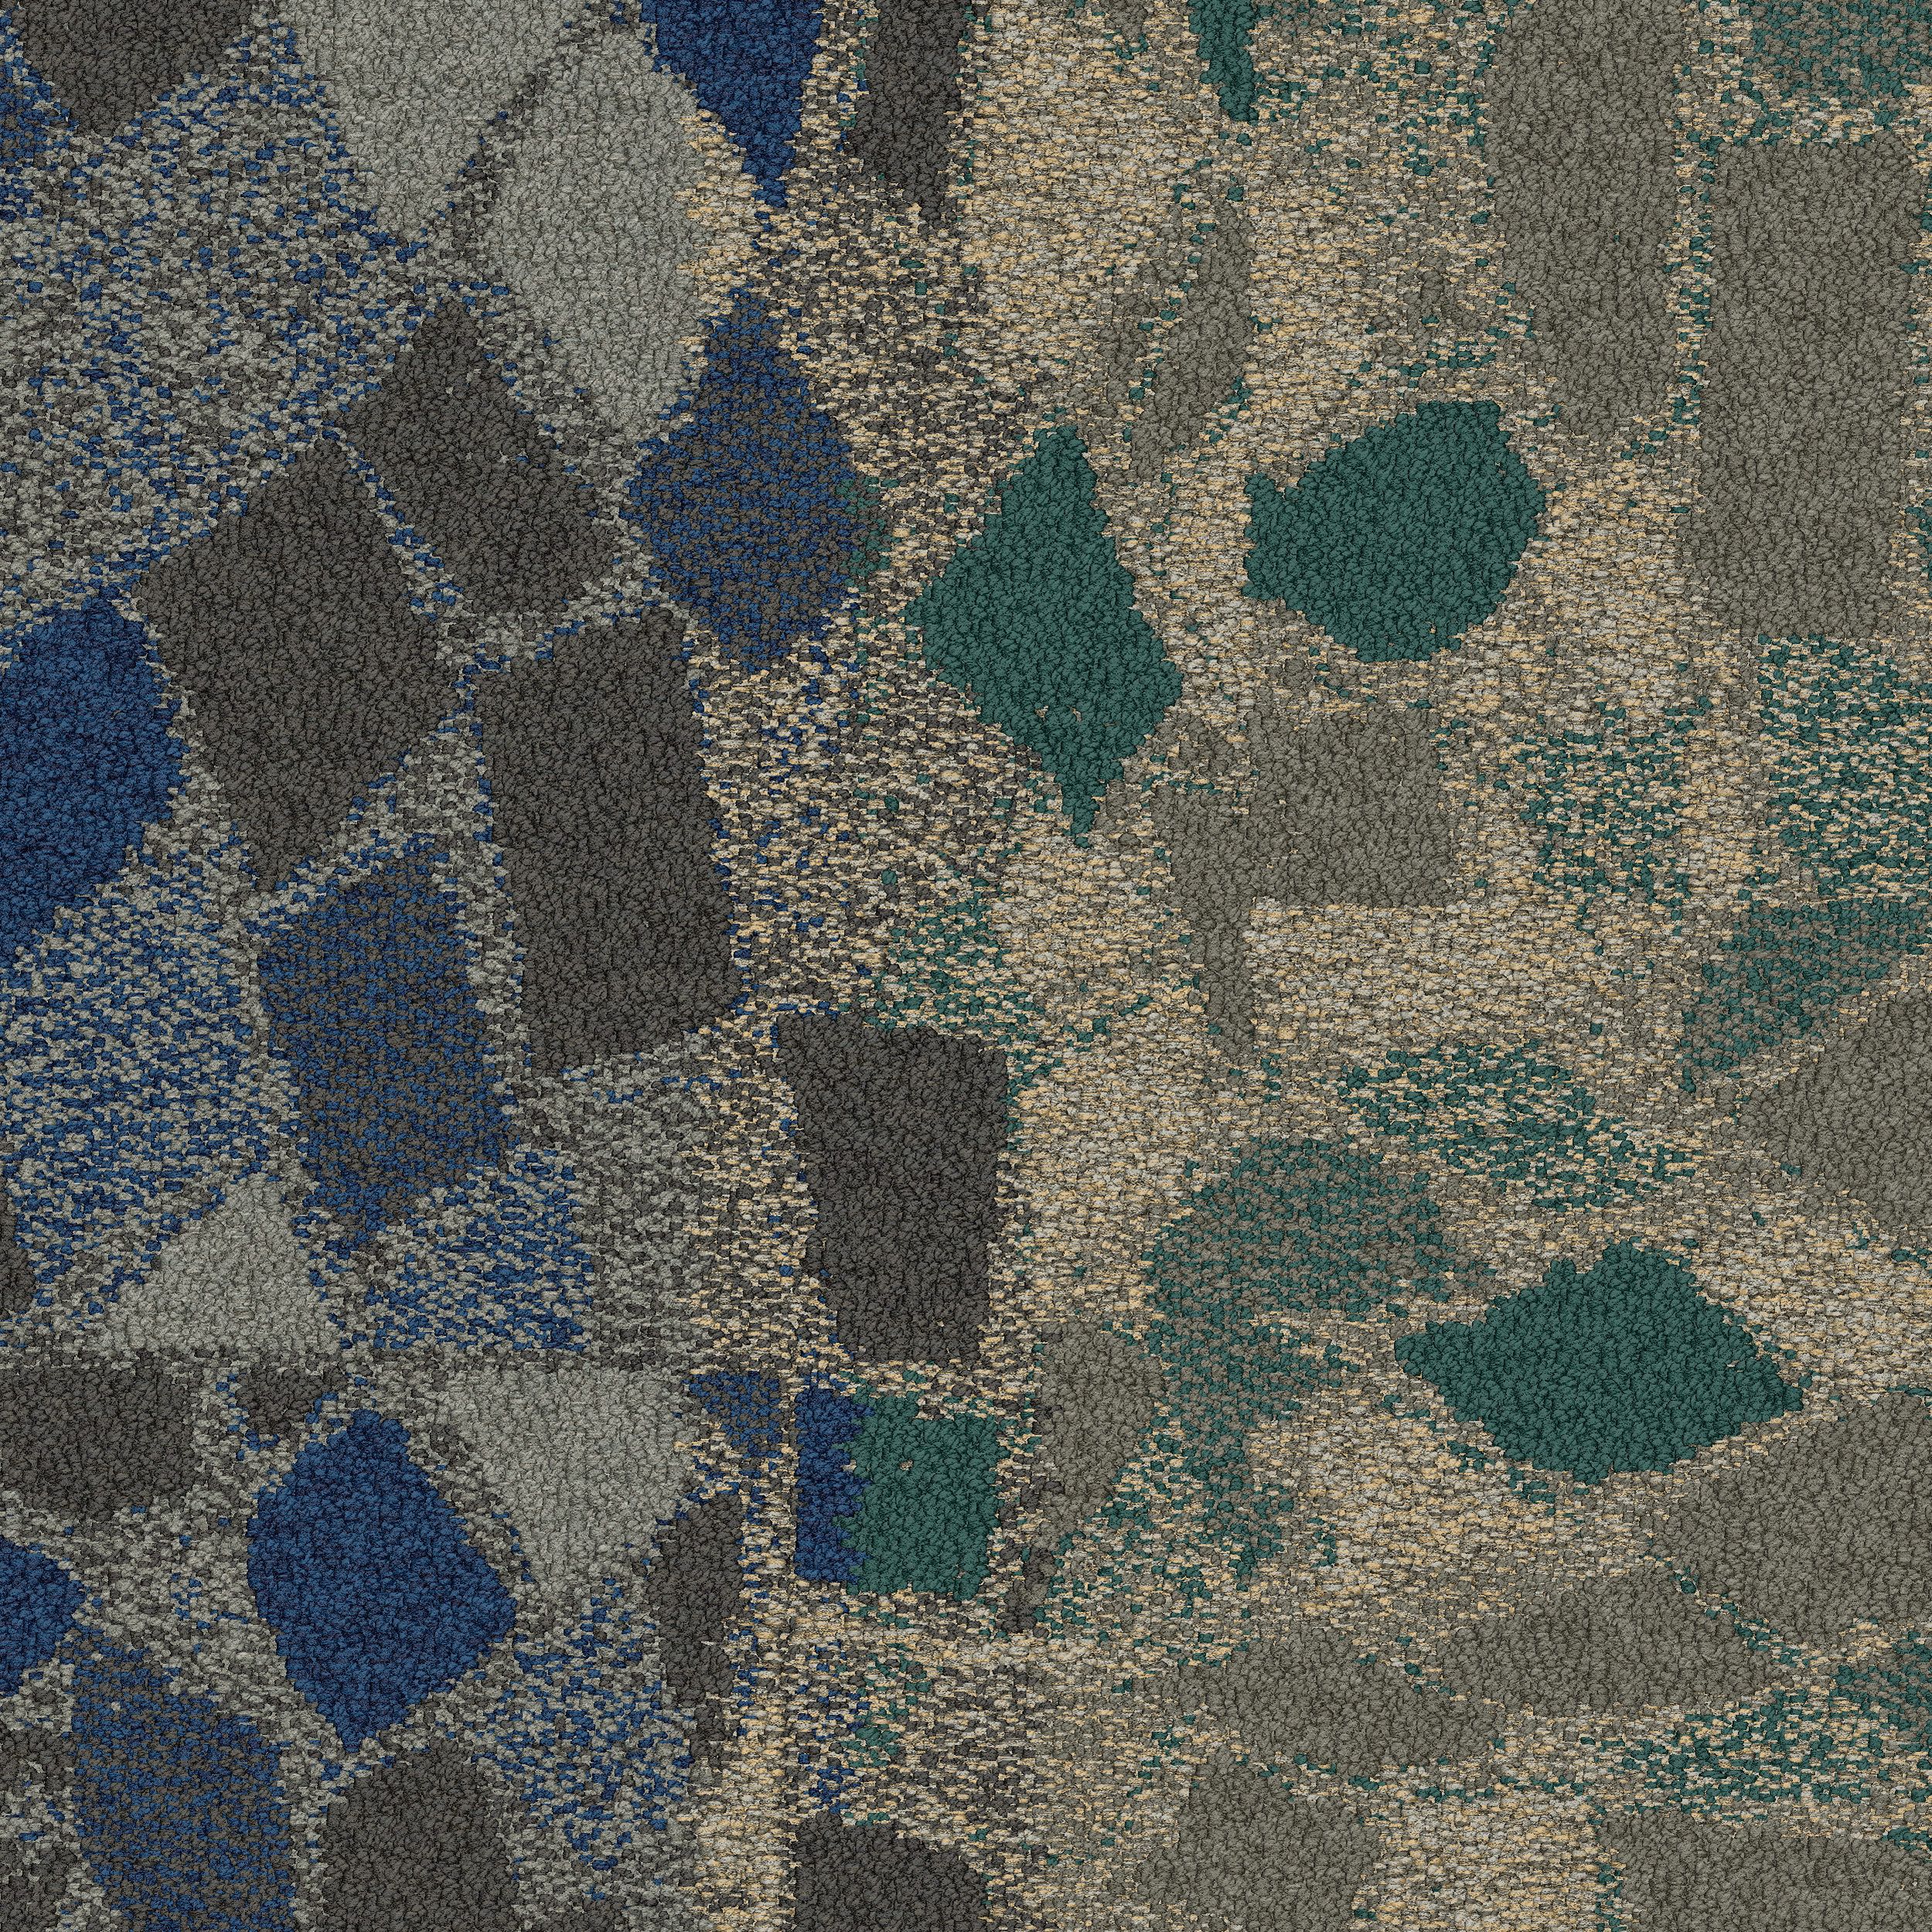 Stone Course Carpet Tile In Tealstone número de imagen 1